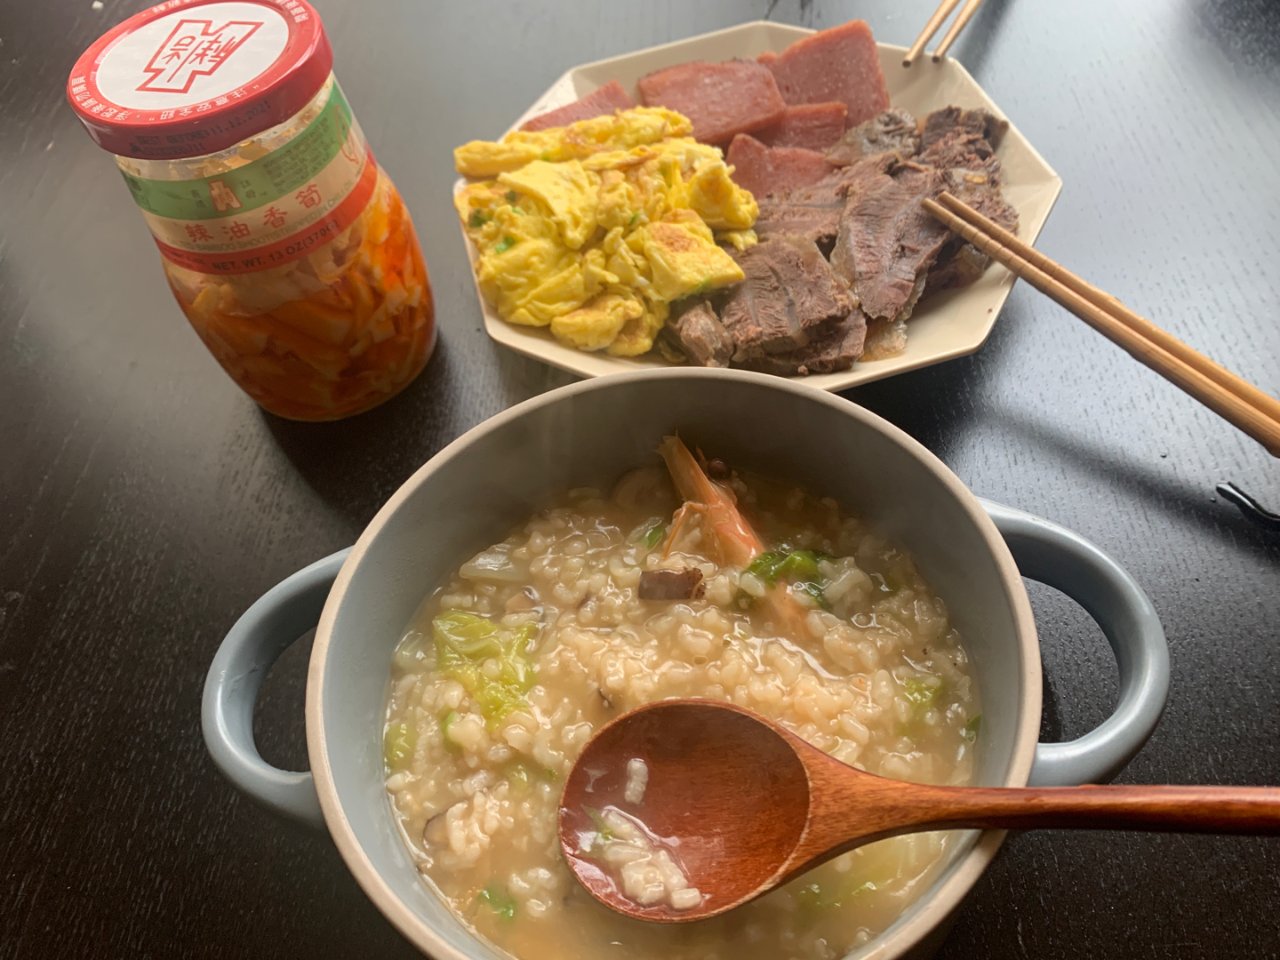 4/23早餐: 海鲜粥+牛腱午餐肉等...